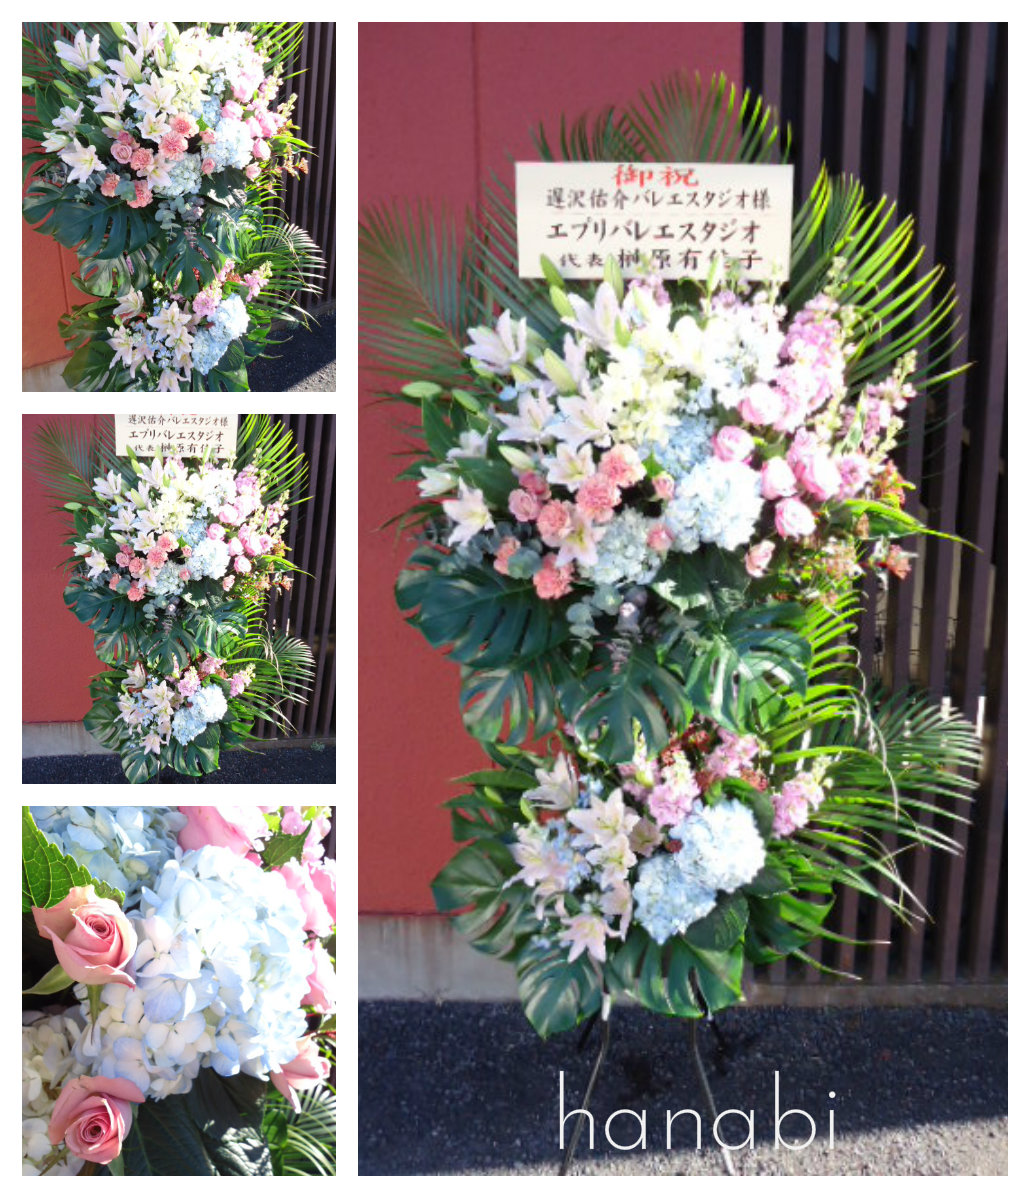 バレエの発表会のお花 花灯 Hanabi 栃木県宇都宮市の花屋です